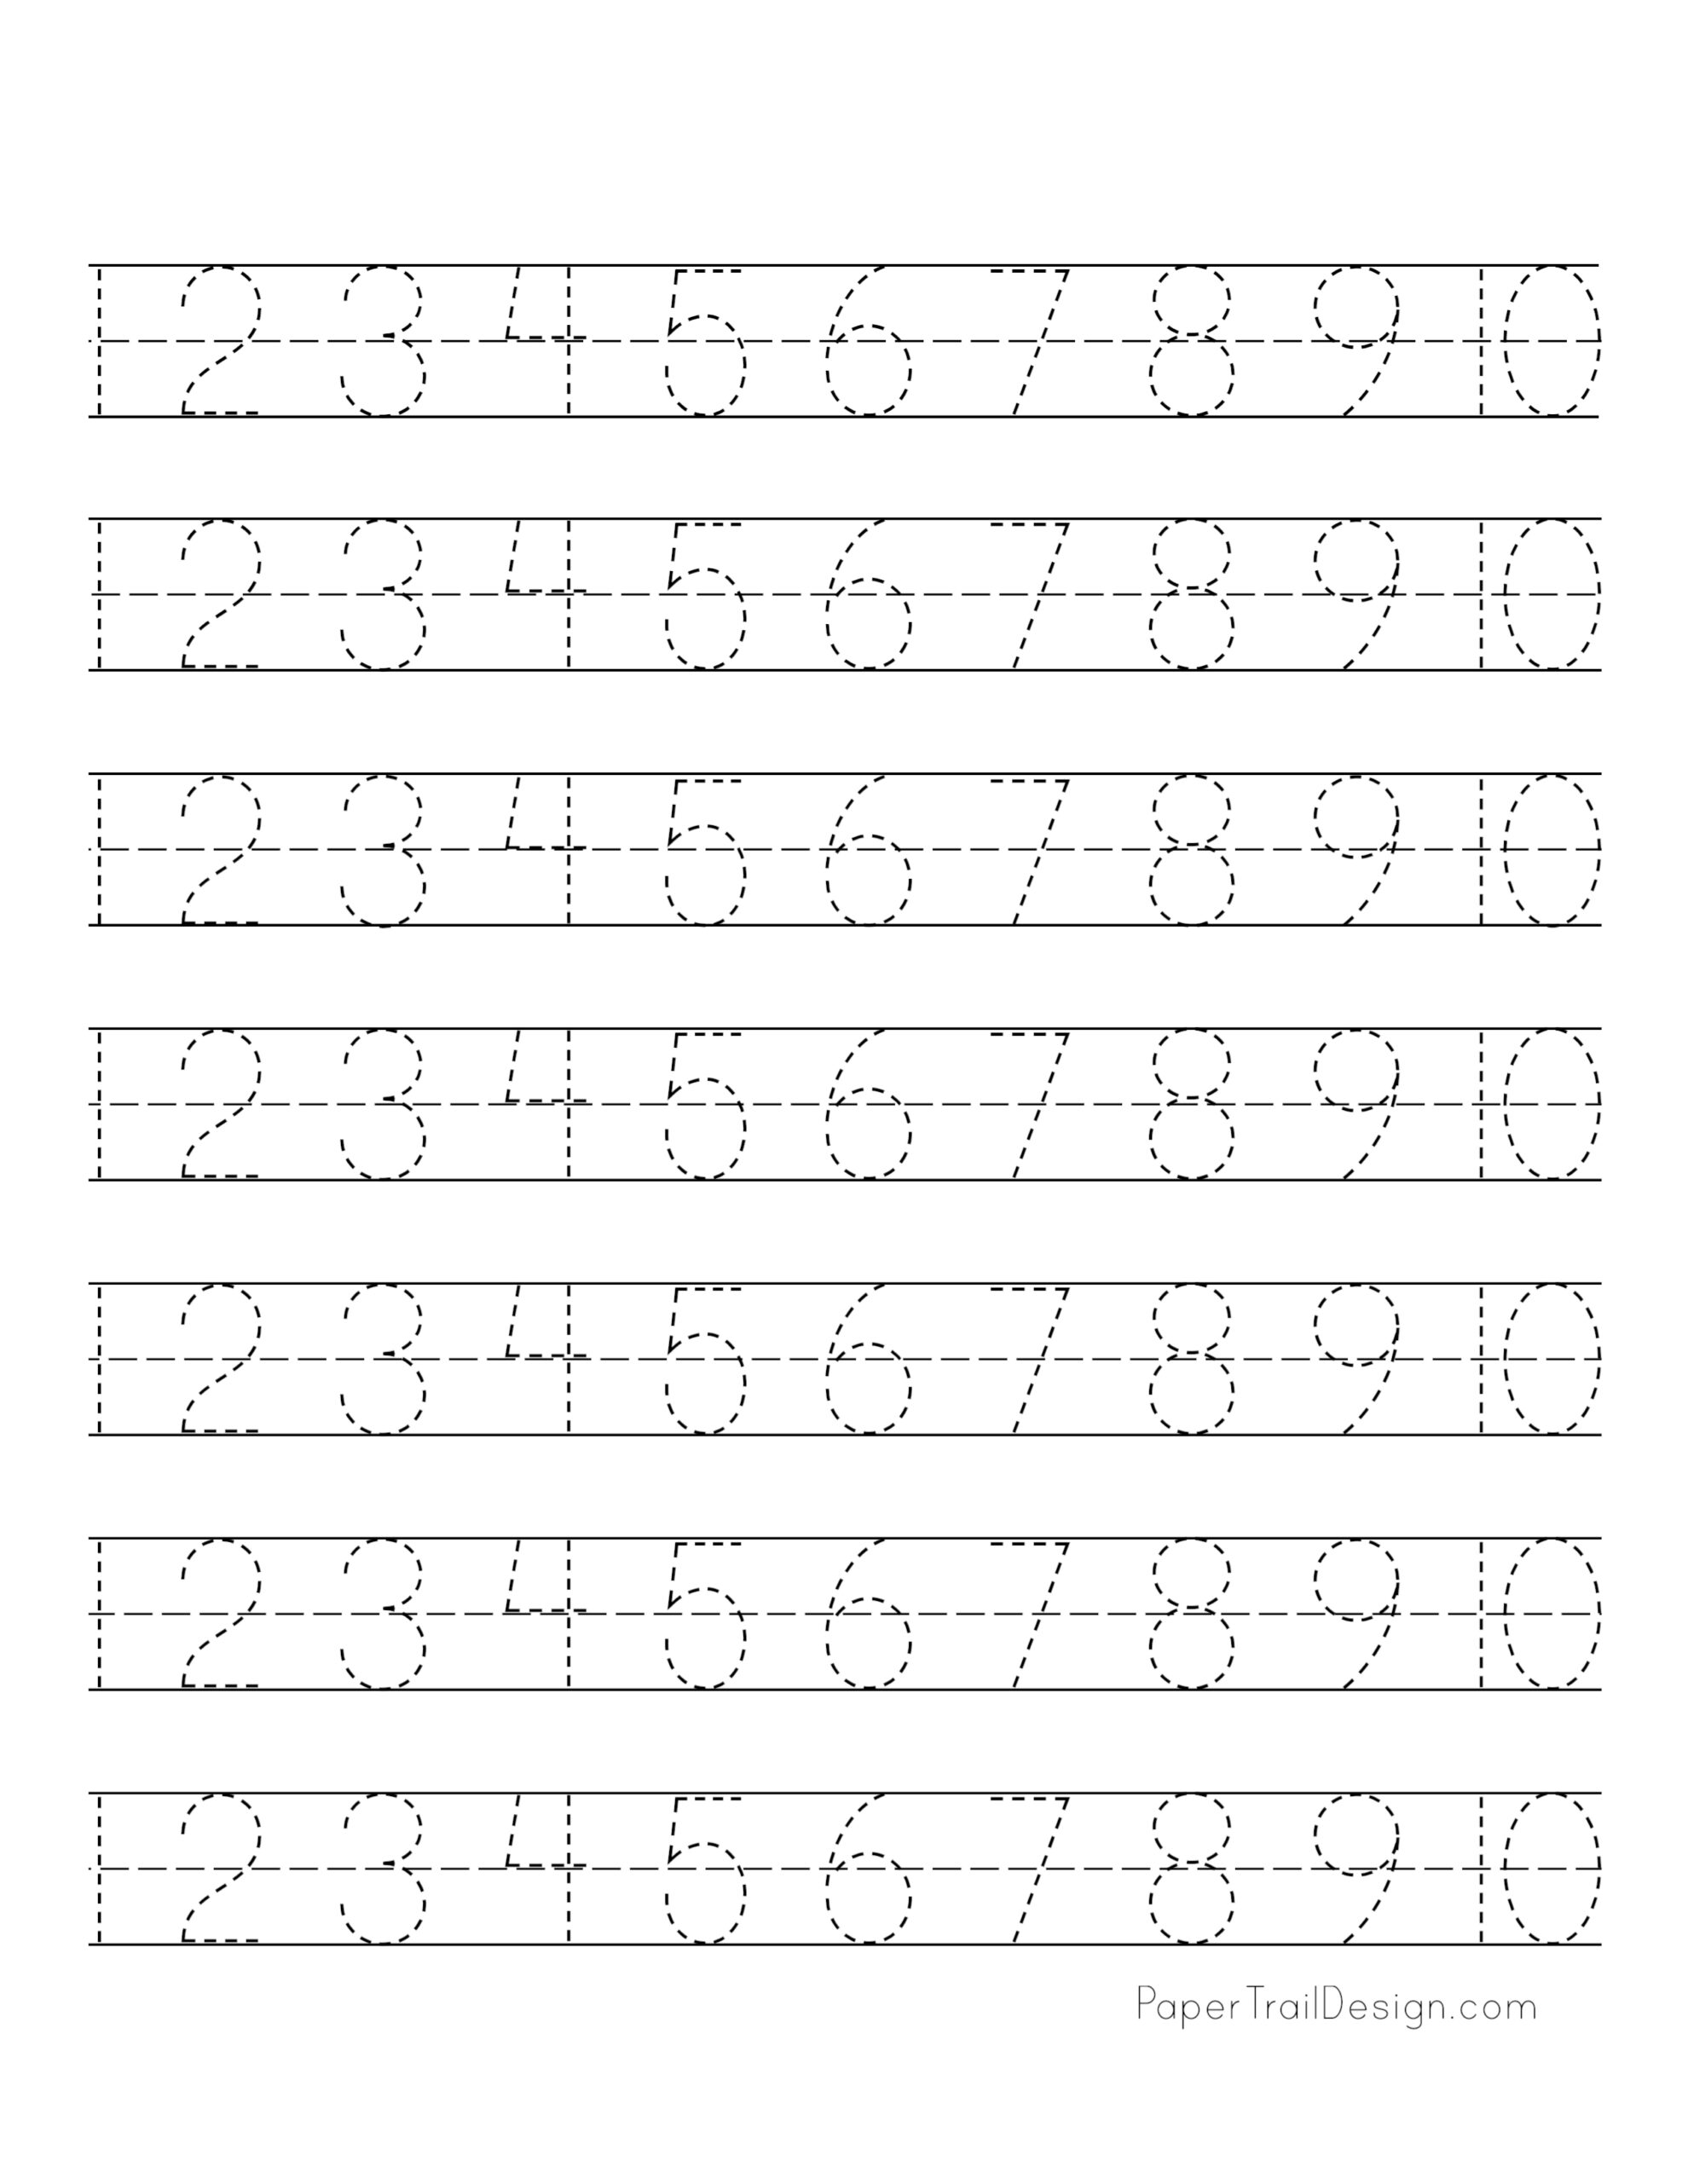 number-tracing-1-10-worksheet-free-printable-worksheets-worksheetfun-free-printable-worksheets